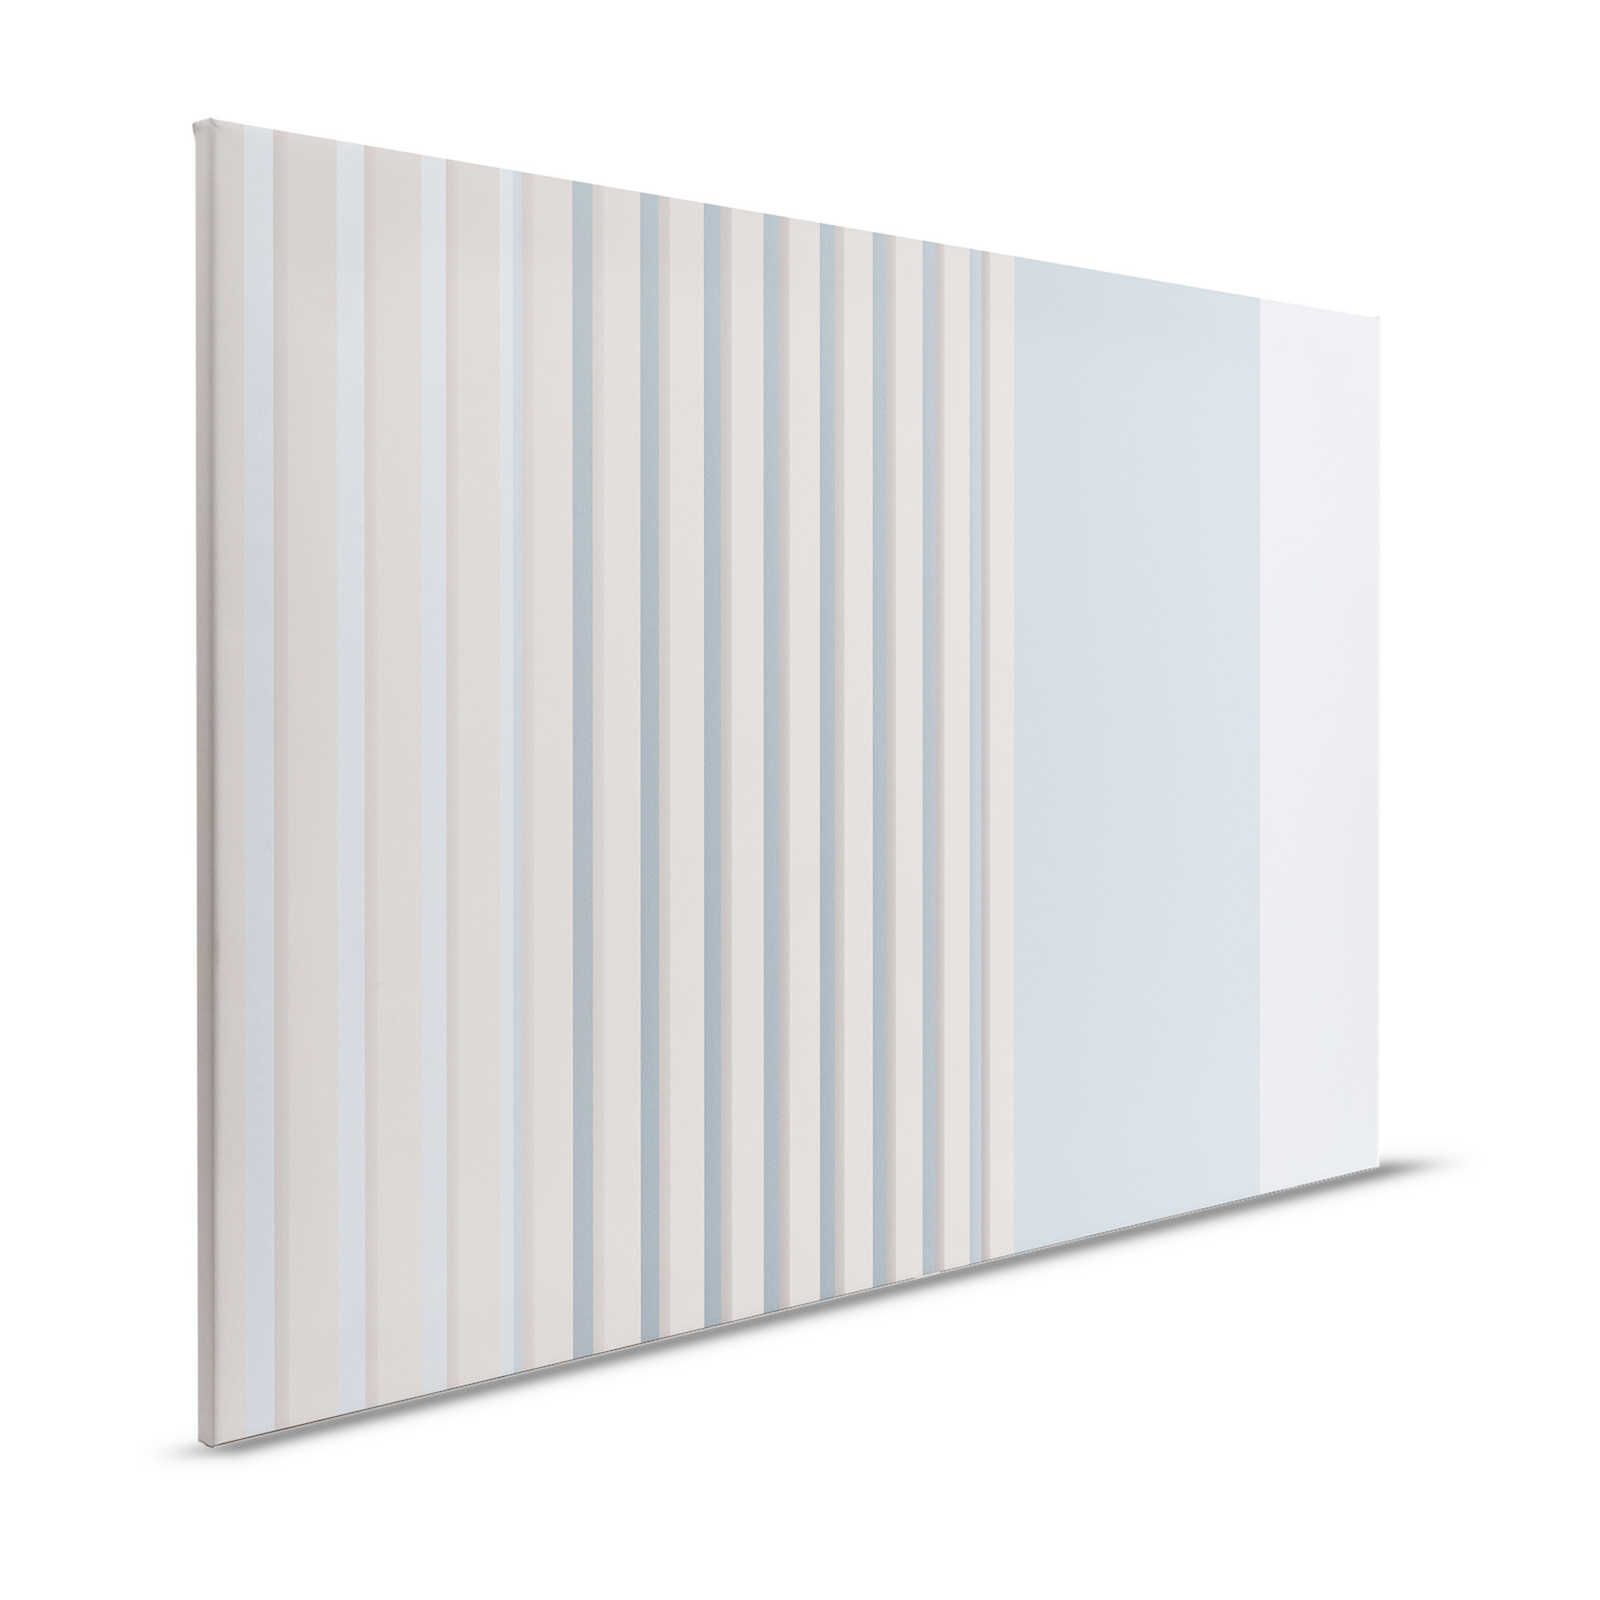 Illusion Room 2 - Quadro su tela con disegno a righe 3D in blu e grigio - 1,20 m x 0,80 m
